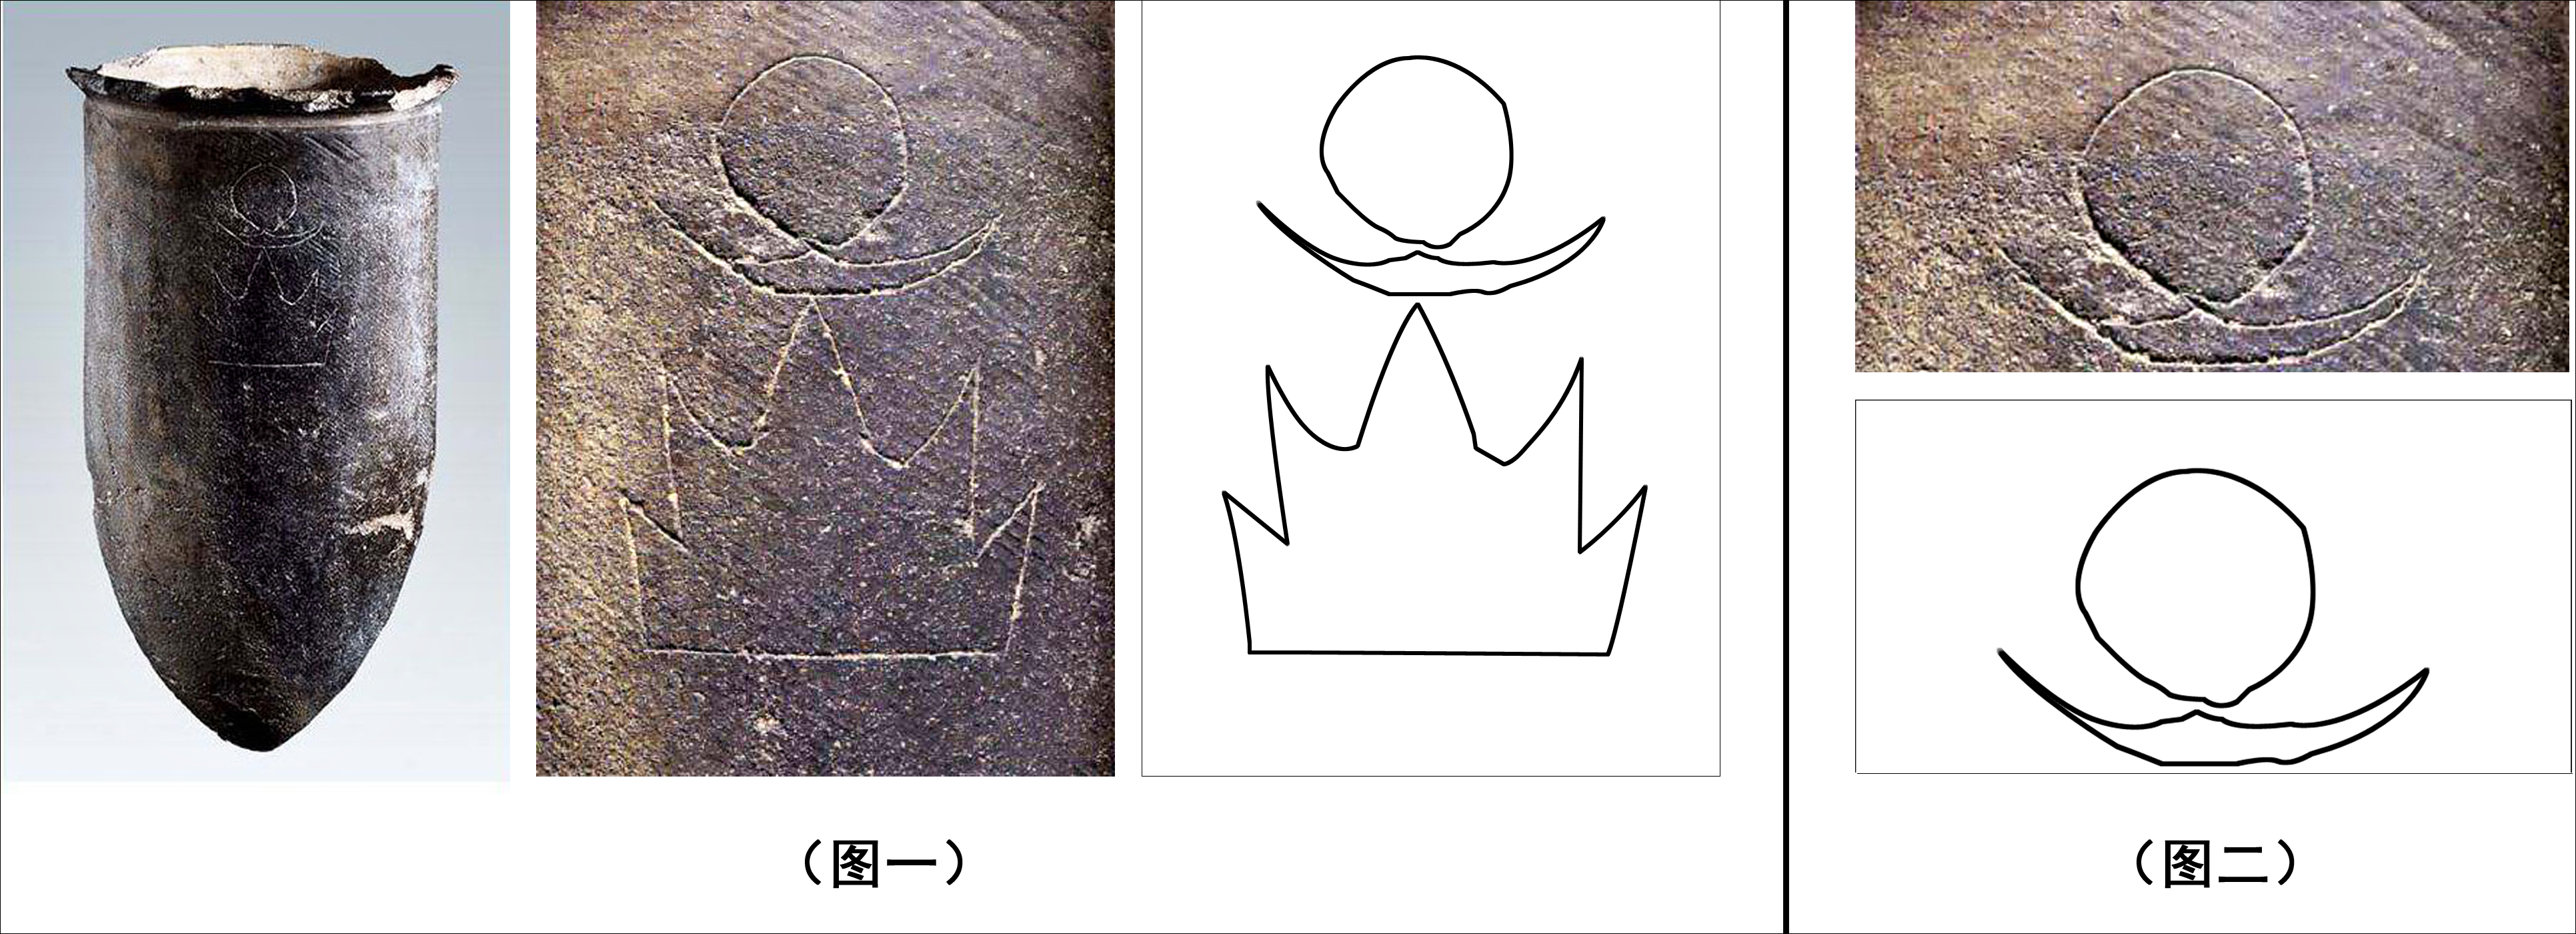 芈月 王者荣耀壁纸【2】(游戏静态壁纸) - 静态壁纸下载 - 元气壁纸